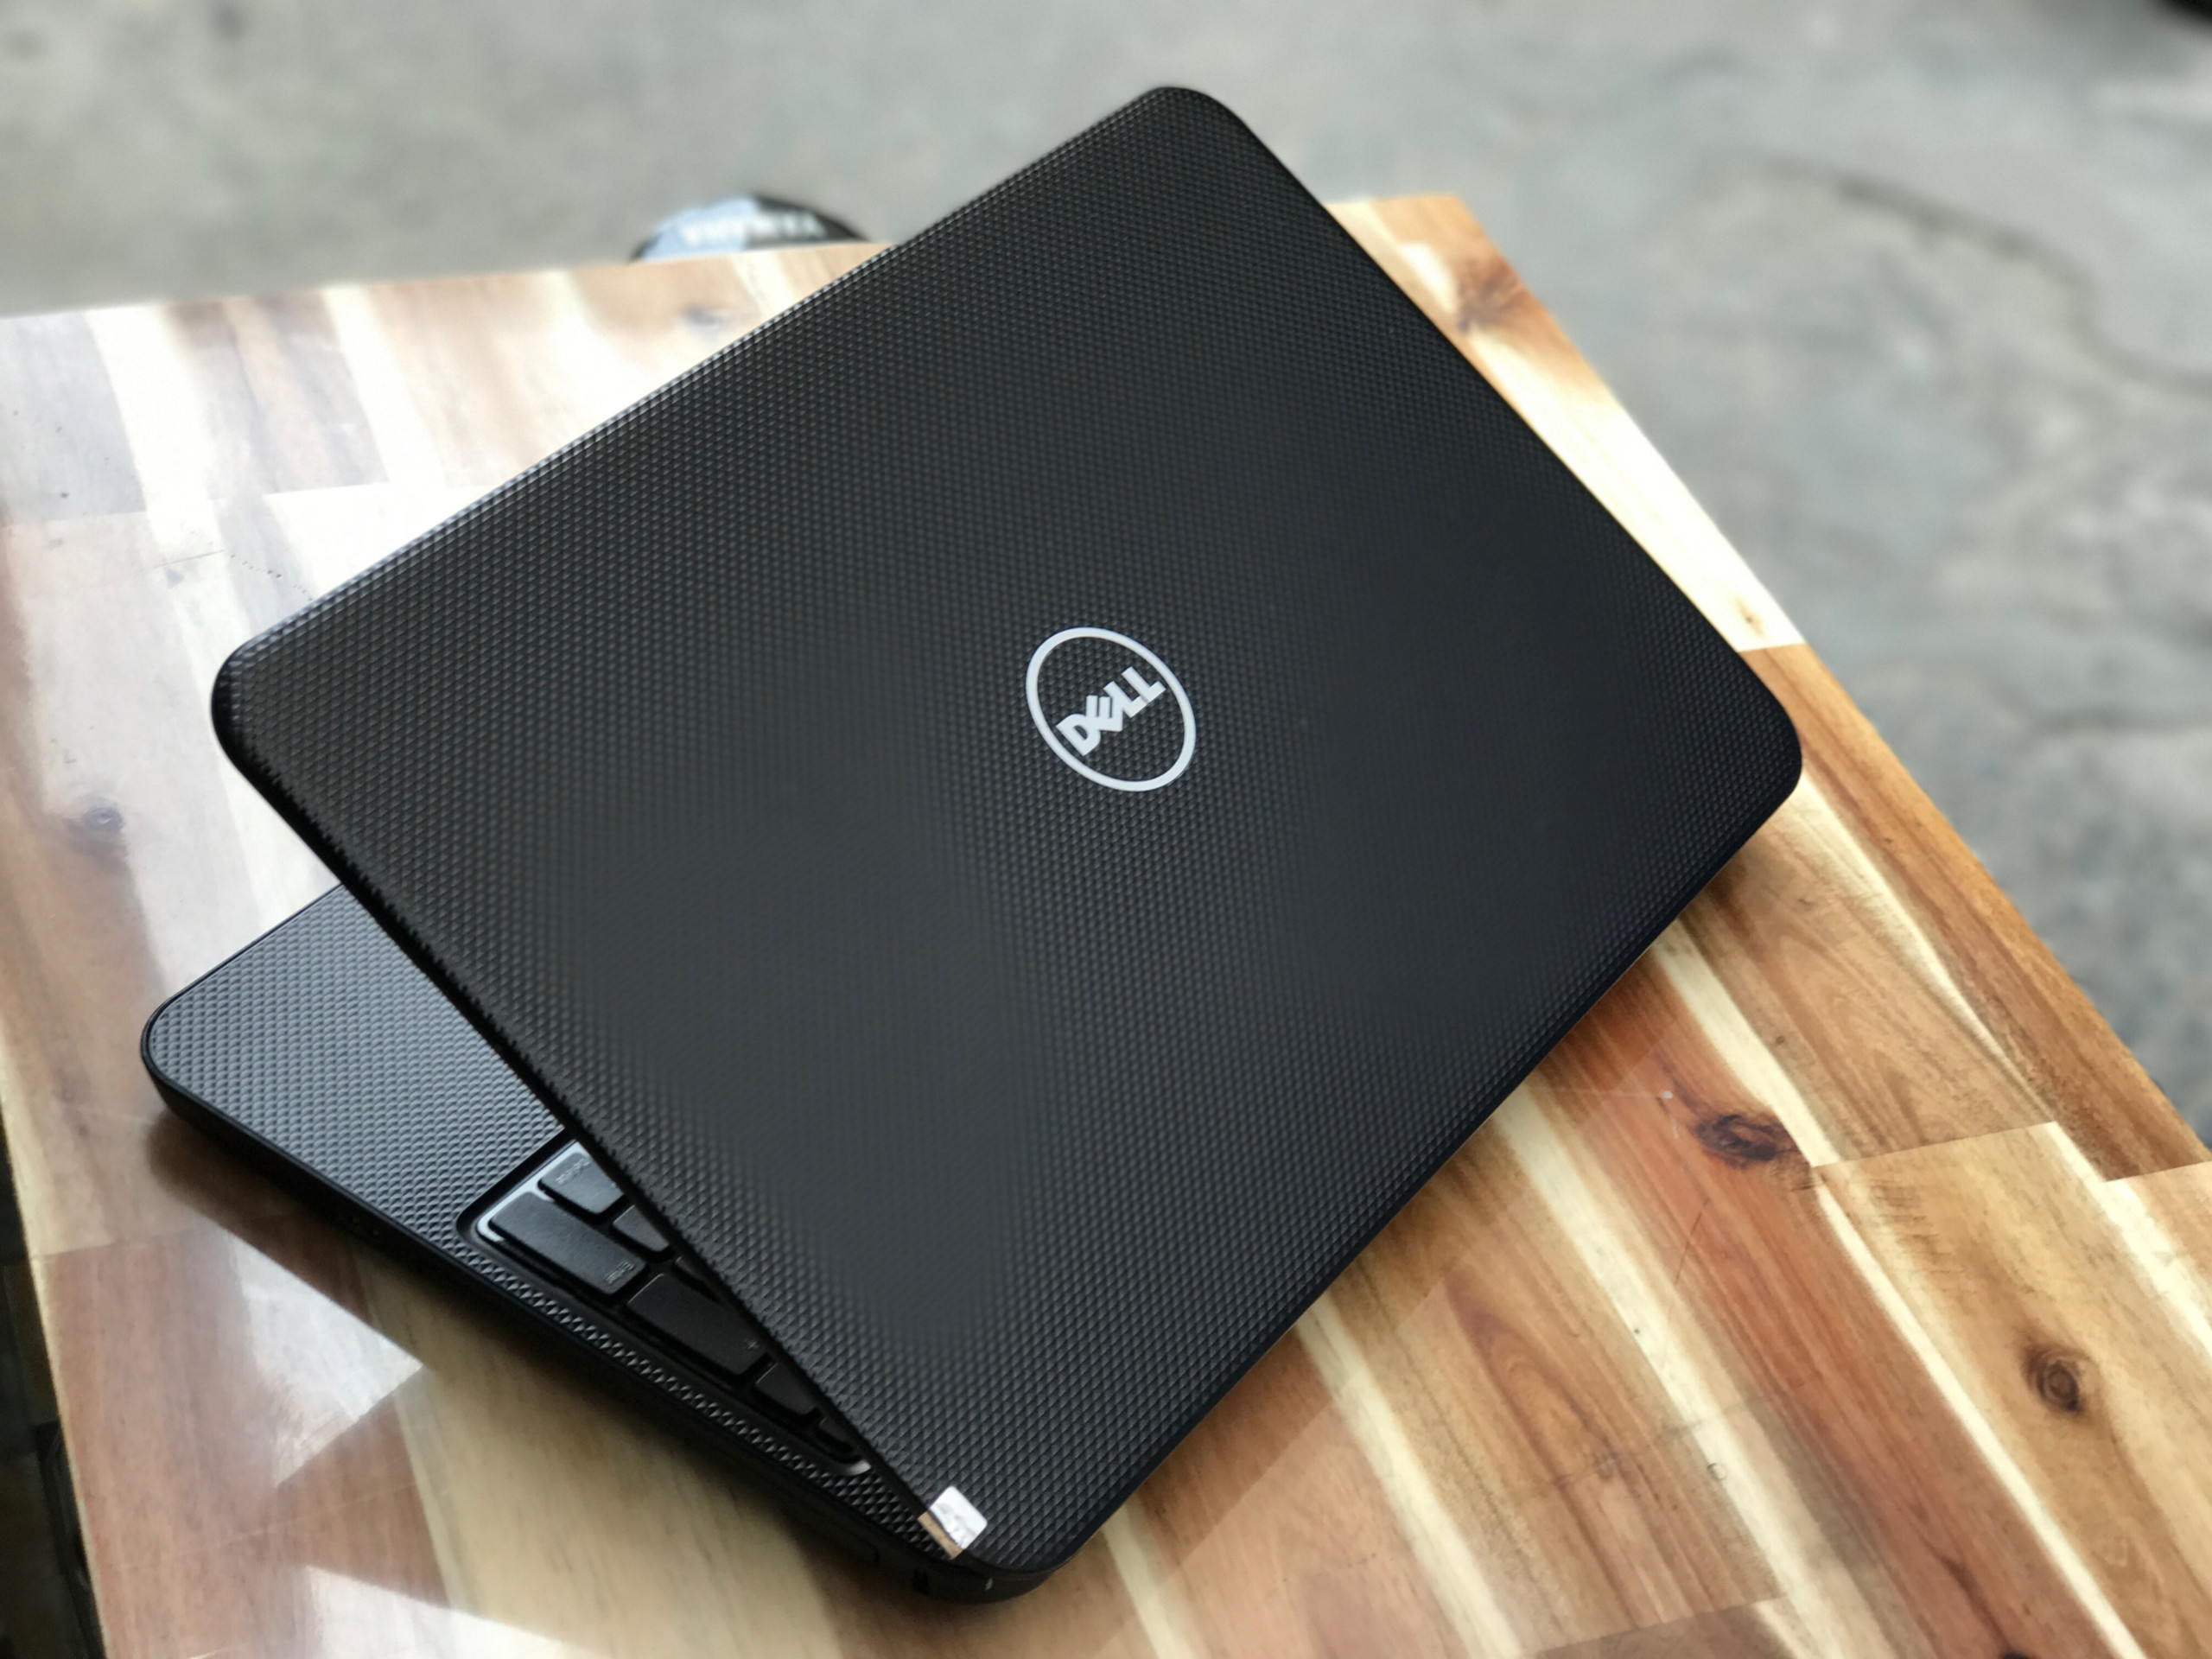 Laptop Dell Inspiron 3537, i5 4200U 4G 500G Vga rời 2G Đẹp zin 100% Giá rẻ1